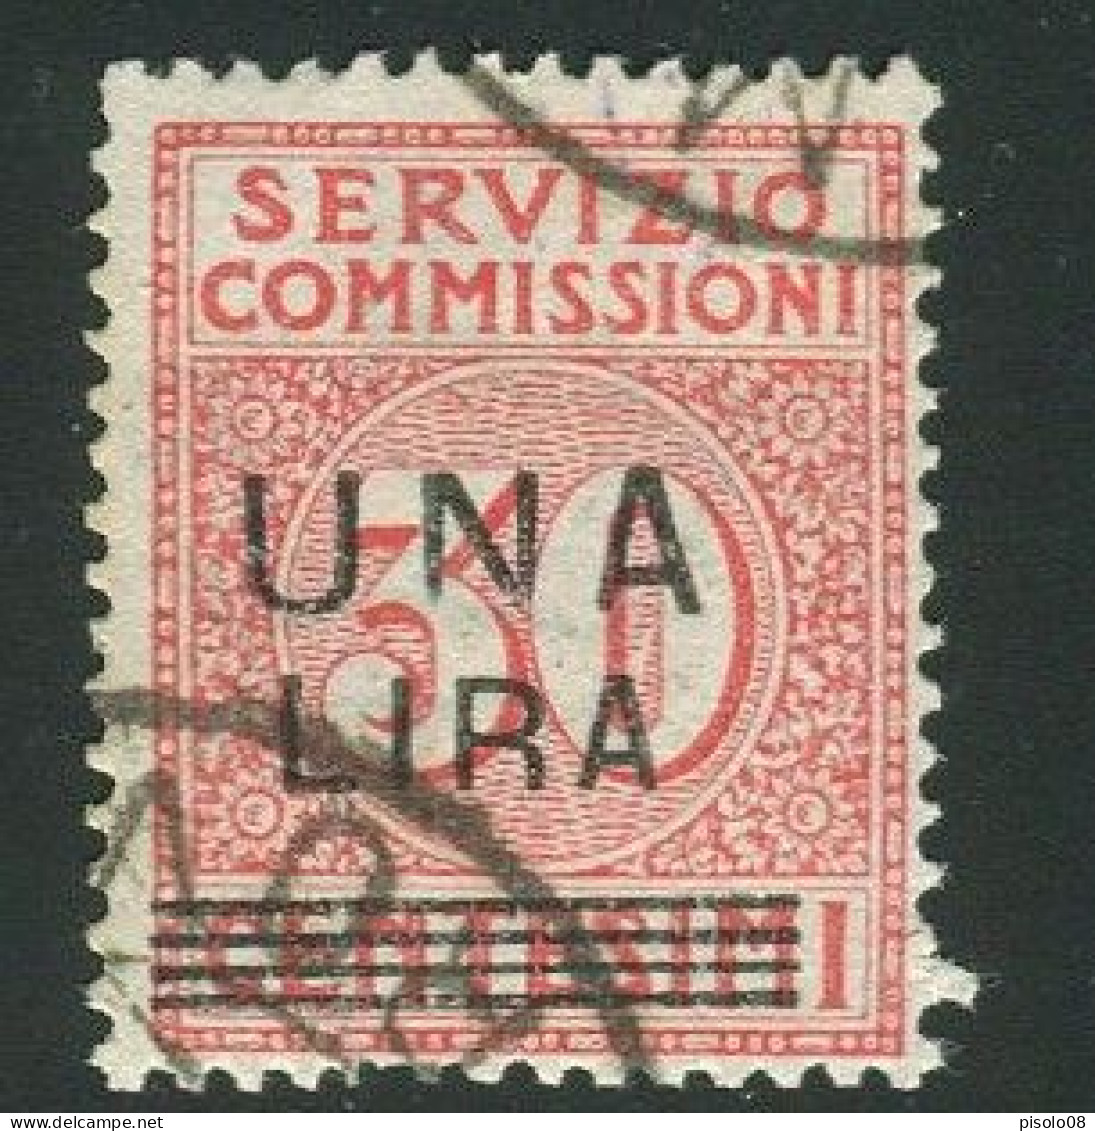 REGNO 1925 SERVIZIO COMMISSIONI 1 L. 30 C.USATA - Taxe